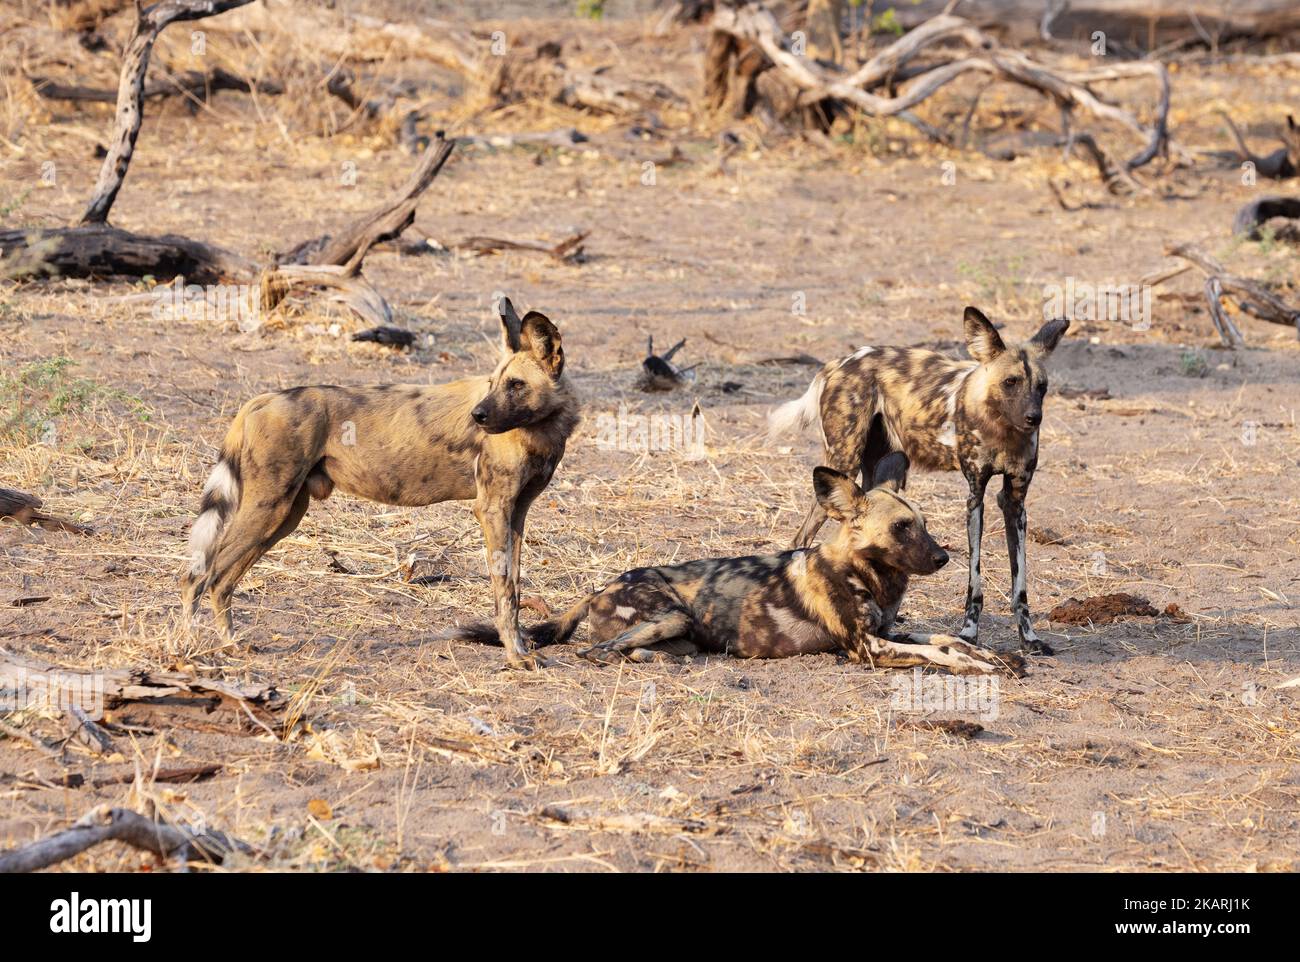 Petit paquet de trois chiens sauvages africains, Lycaon pictus, alias Painted Dog, Moremi Game Reserve, Botswana Africa. Afrique faune. Banque D'Images